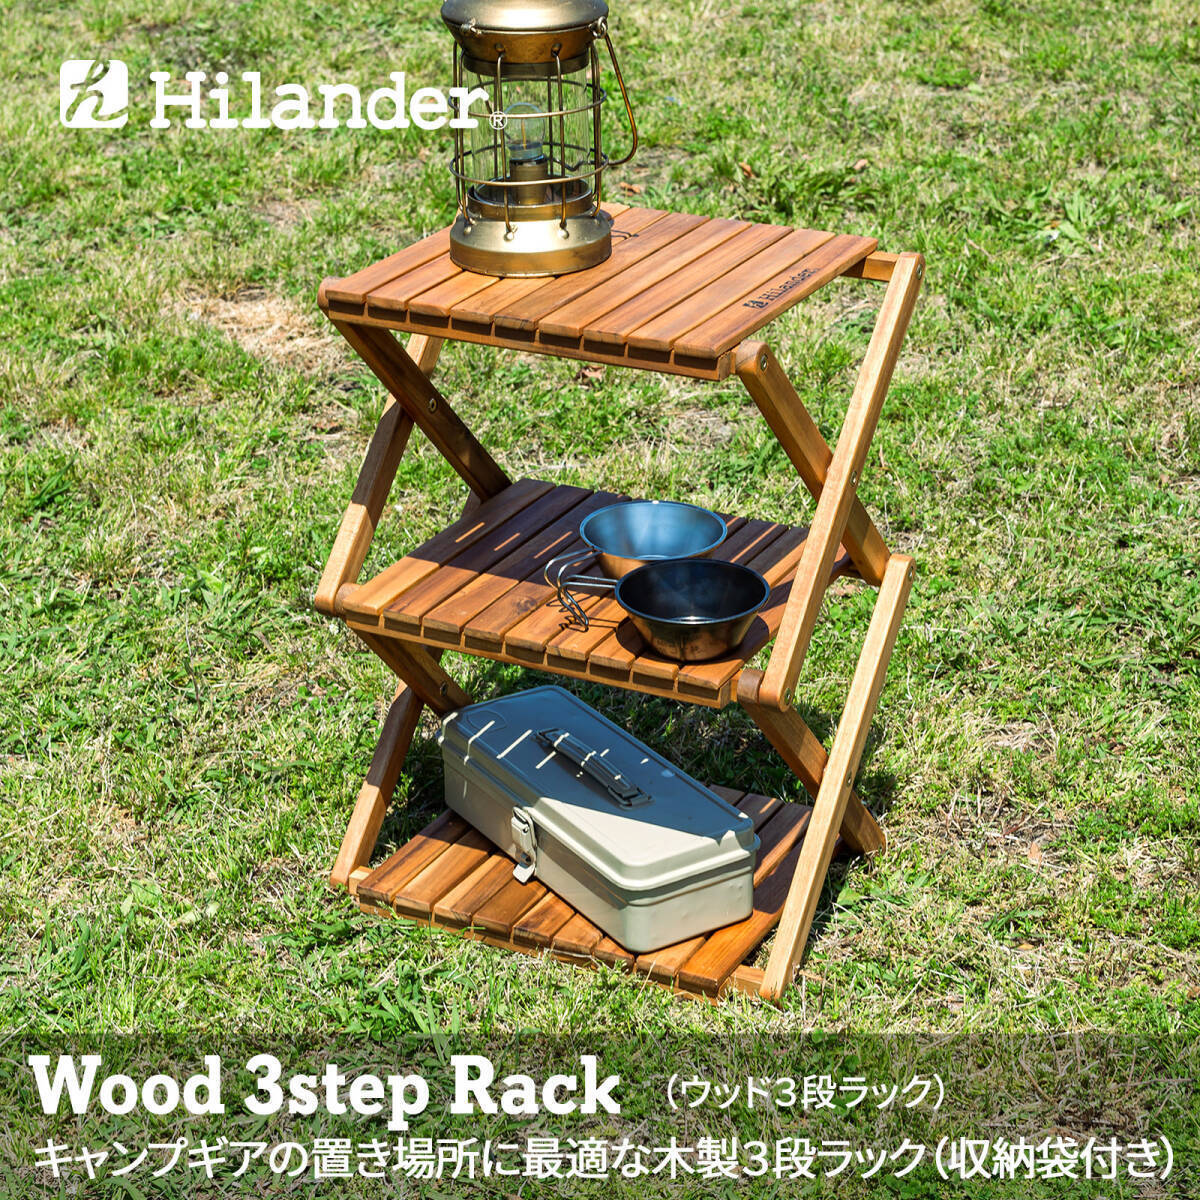 【新品未開封】Hilander(ハイランダー) ウッドラック 3段 専用ケース付き 木製ラック 425 HCTT-001 /Y20701-X3_画像1